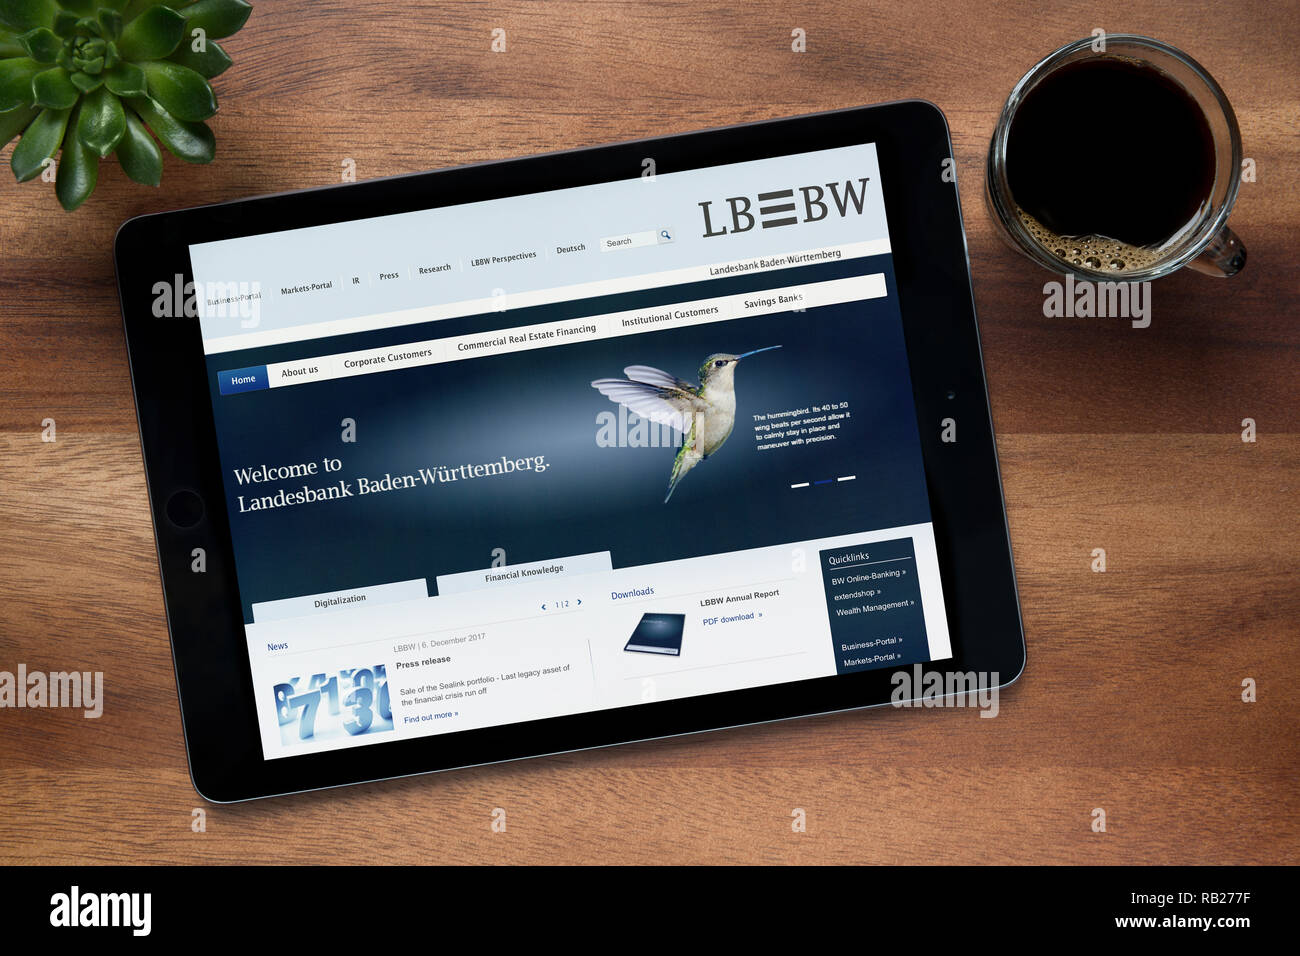 Die Website der LB BW ist auf einem iPad Tablet gesehen, auf einer hölzernen Tisch zusammen mit einem Espresso und einem Haus Anlage (nur redaktionelle Nutzung). Stockfoto